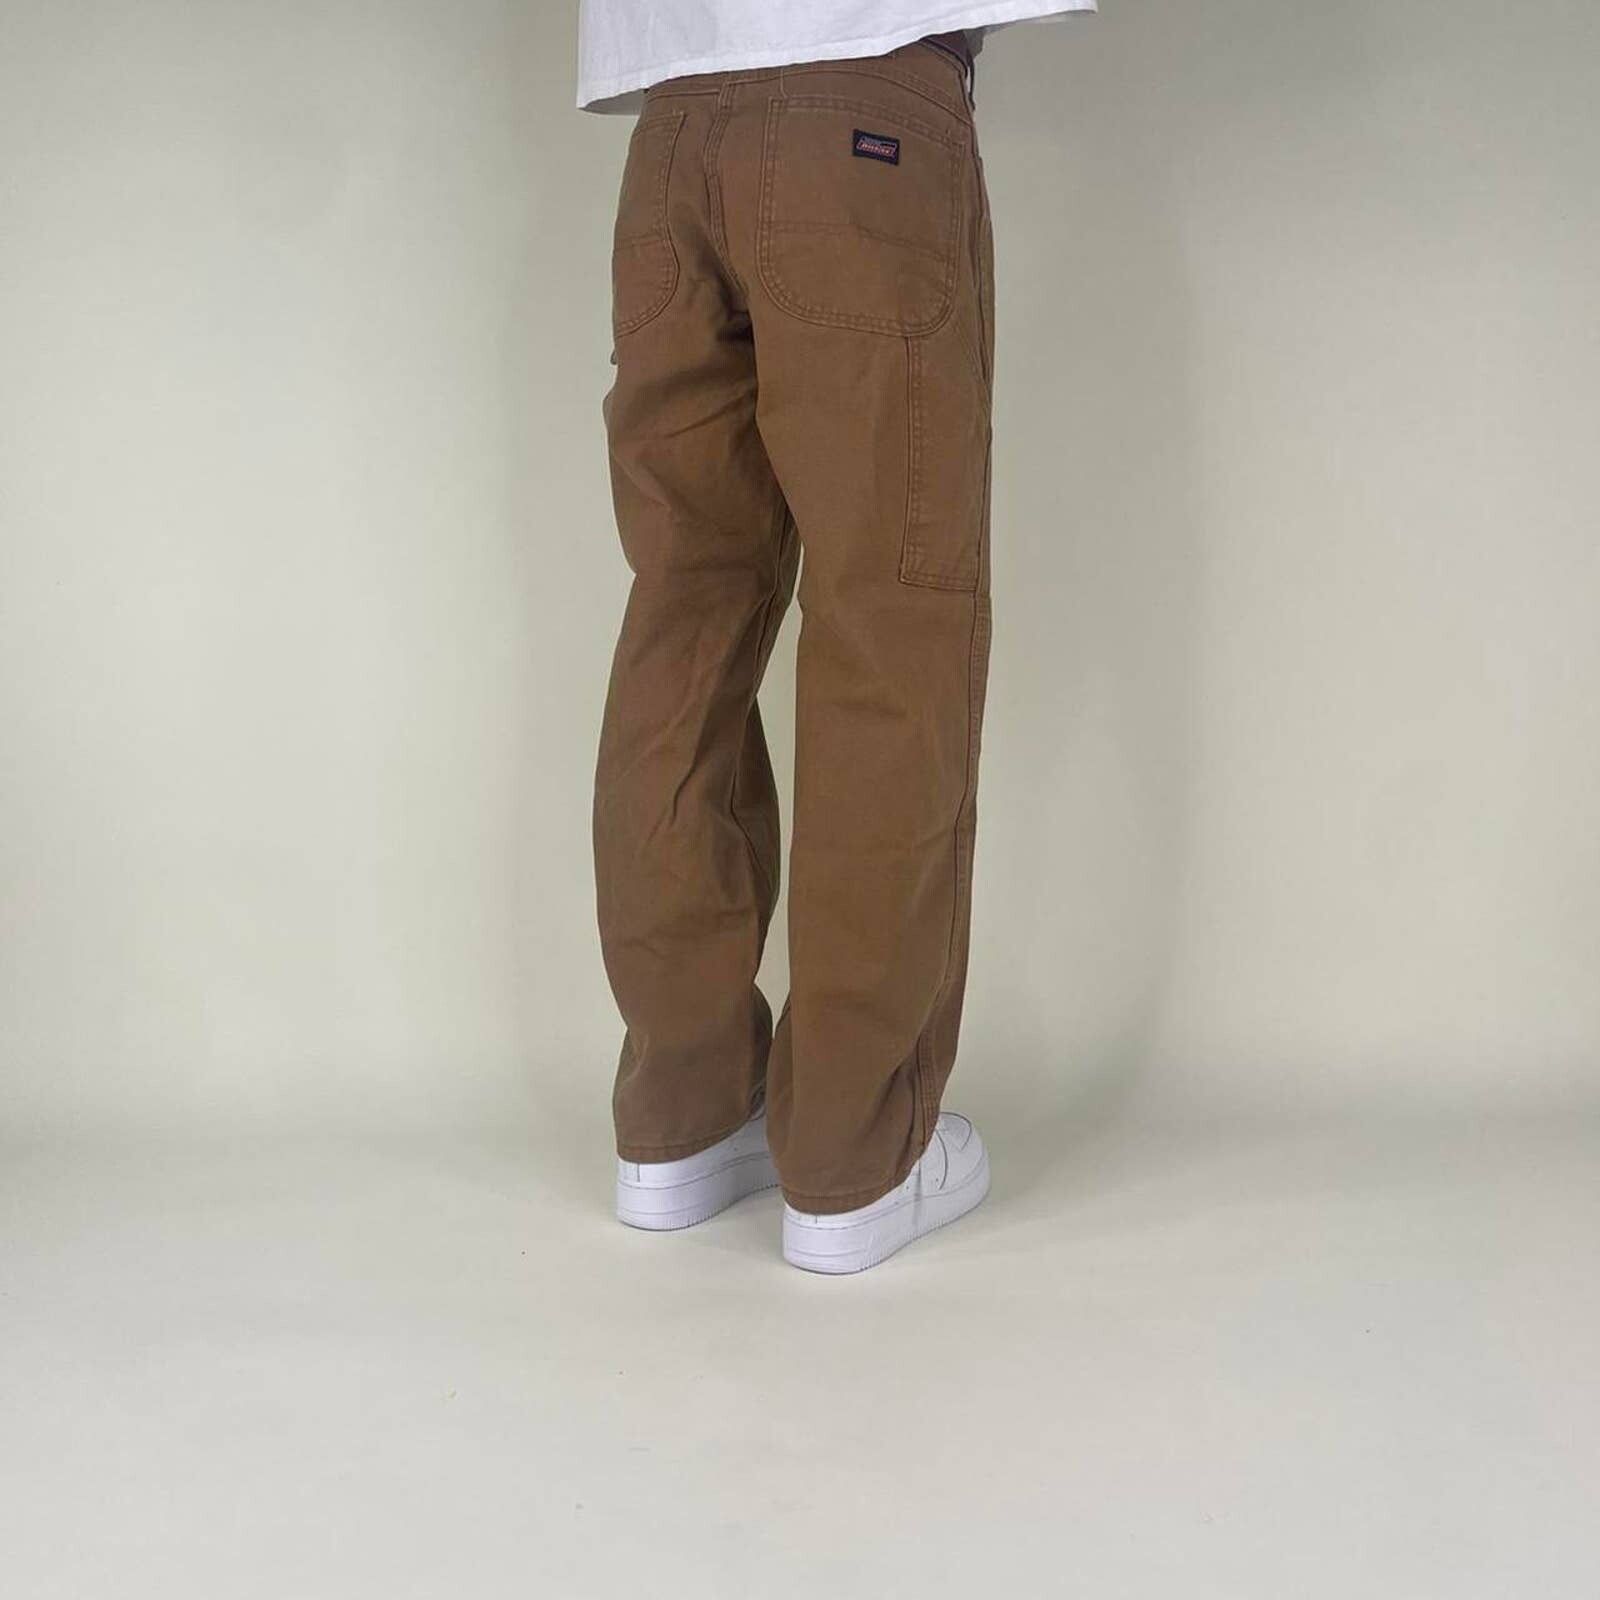 Dickies Tan Dickies Carpenter Pants Size US 32 / EU 48 - 4 Preview